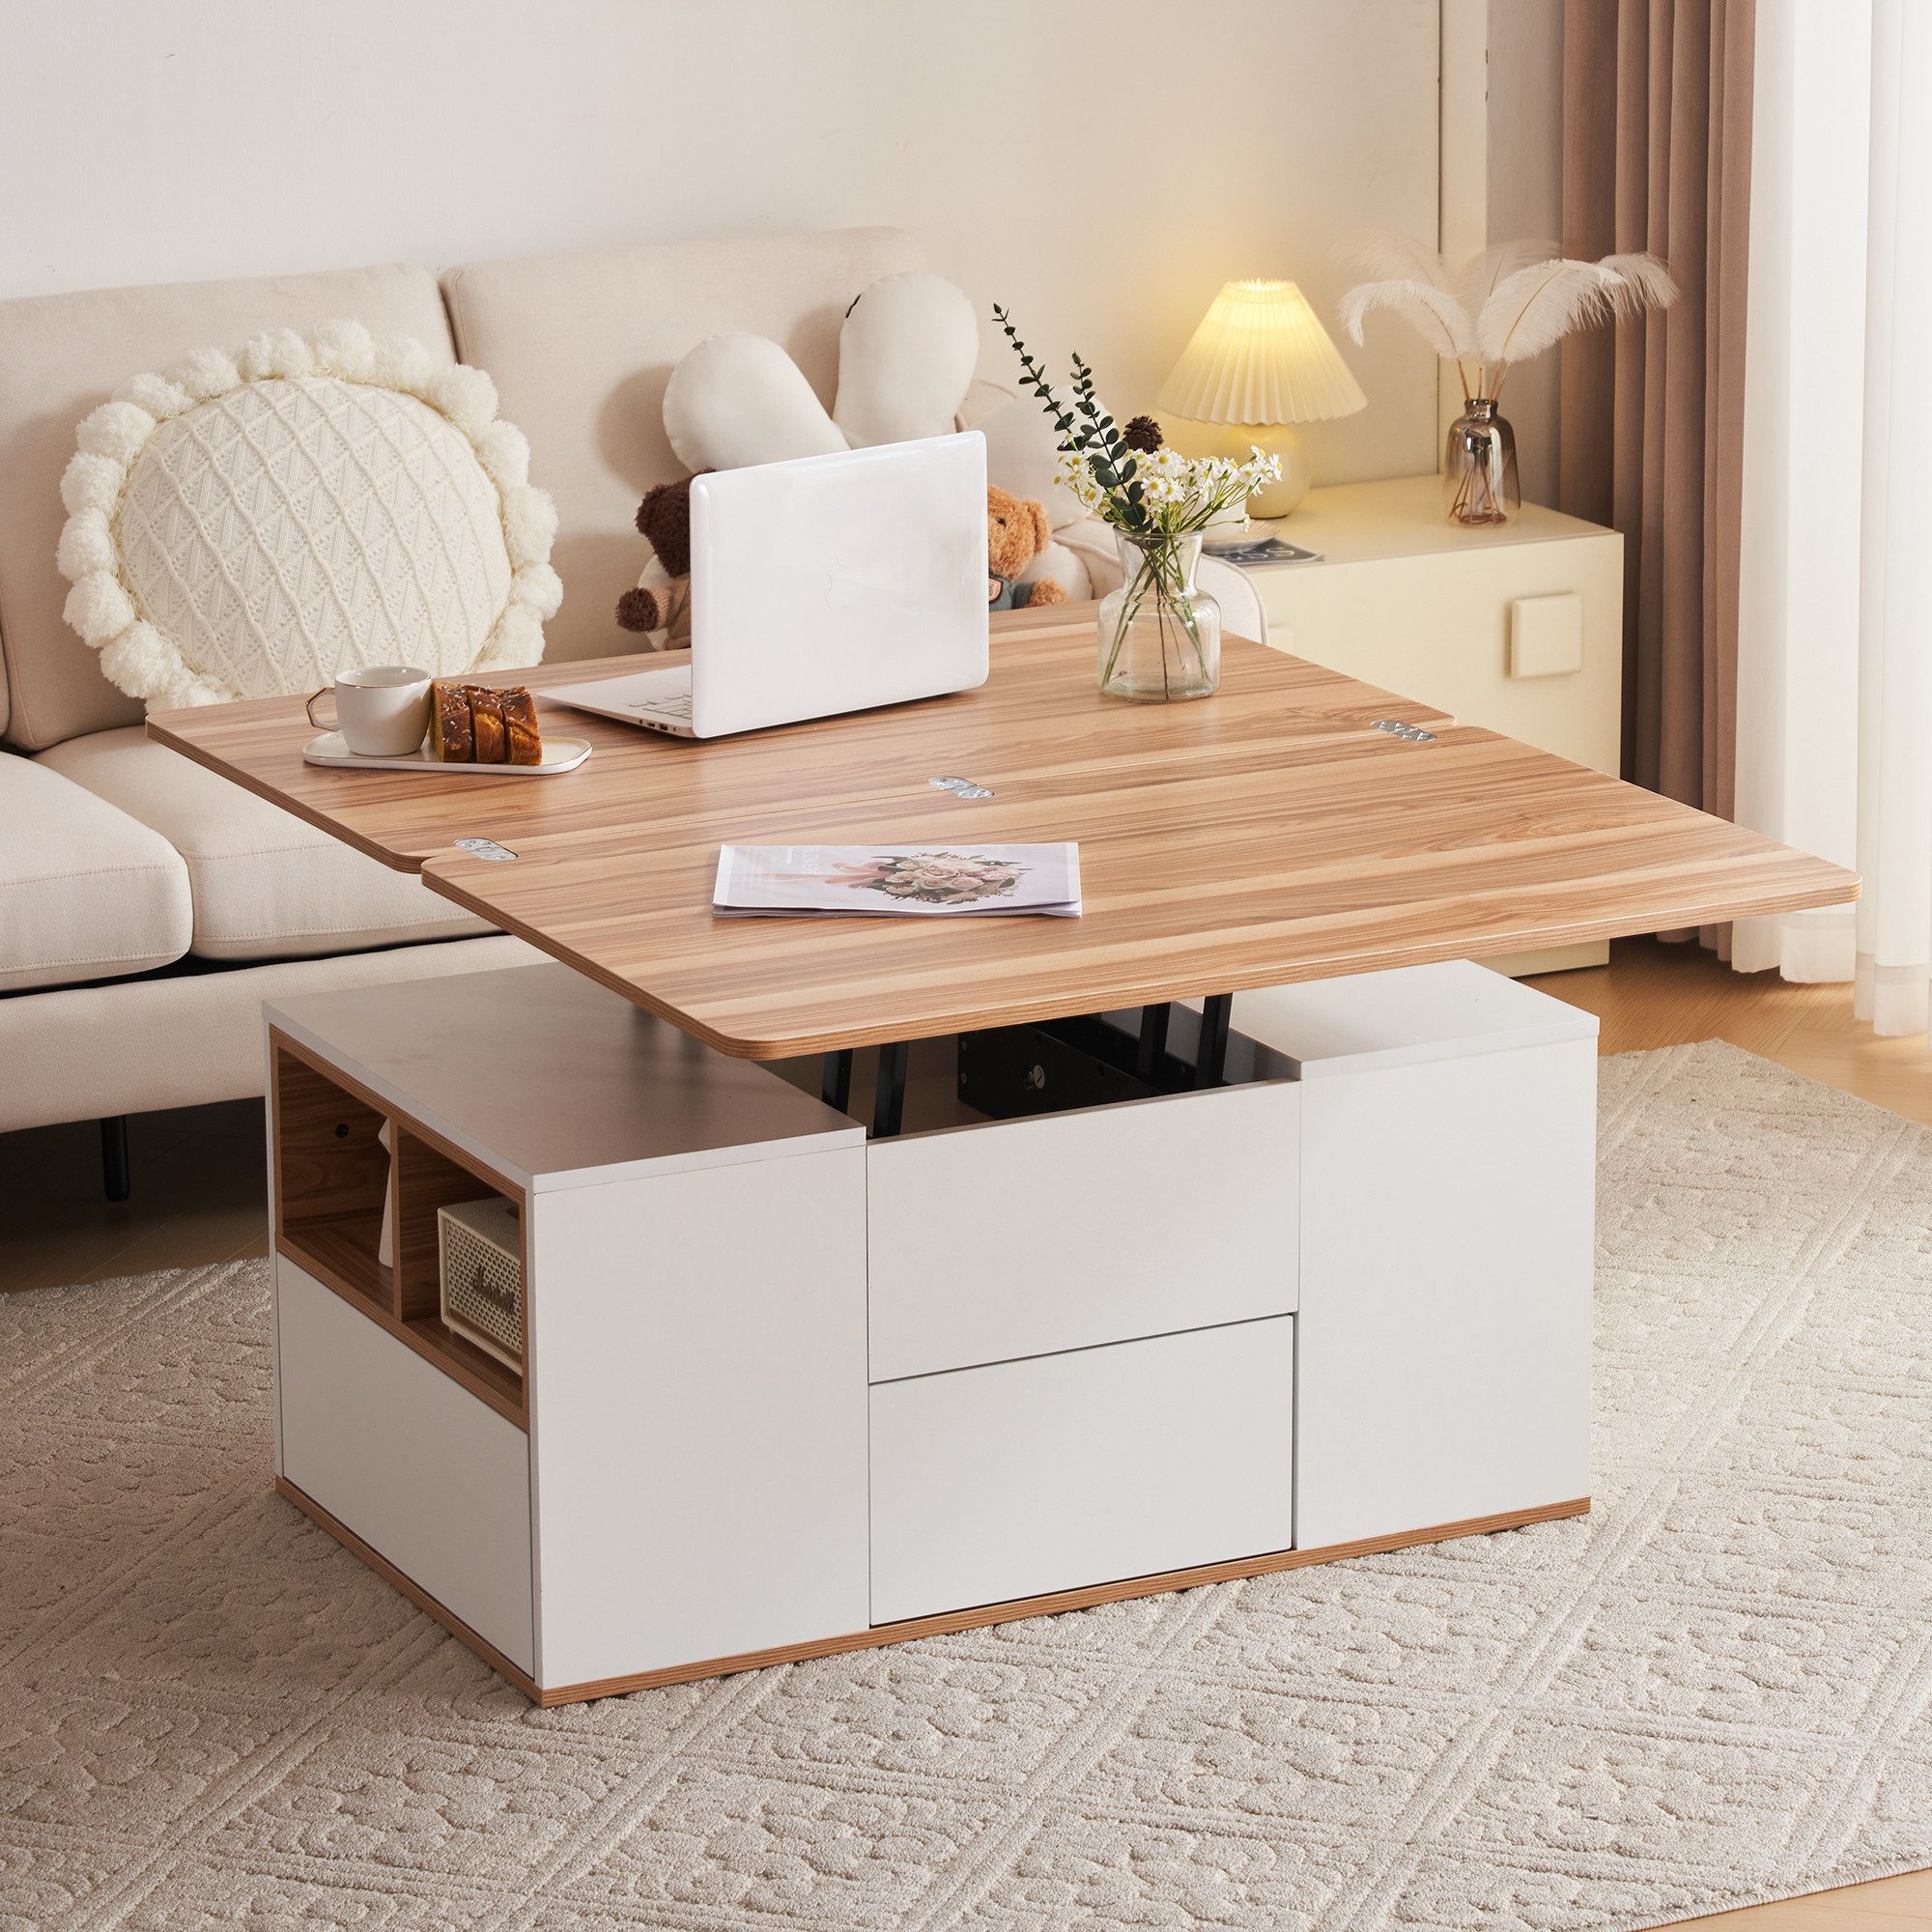 OKWISH Couchtisch Wohnzimmertisch Multifunktions-Couchtisch (Modern Wohnzimmermöbel,Büro-Esstisch Freizeittisch Multifunktionstisch, mit ausziehbarer Tischplatte), Tischplatte öffnet sich zu 2 Tischen